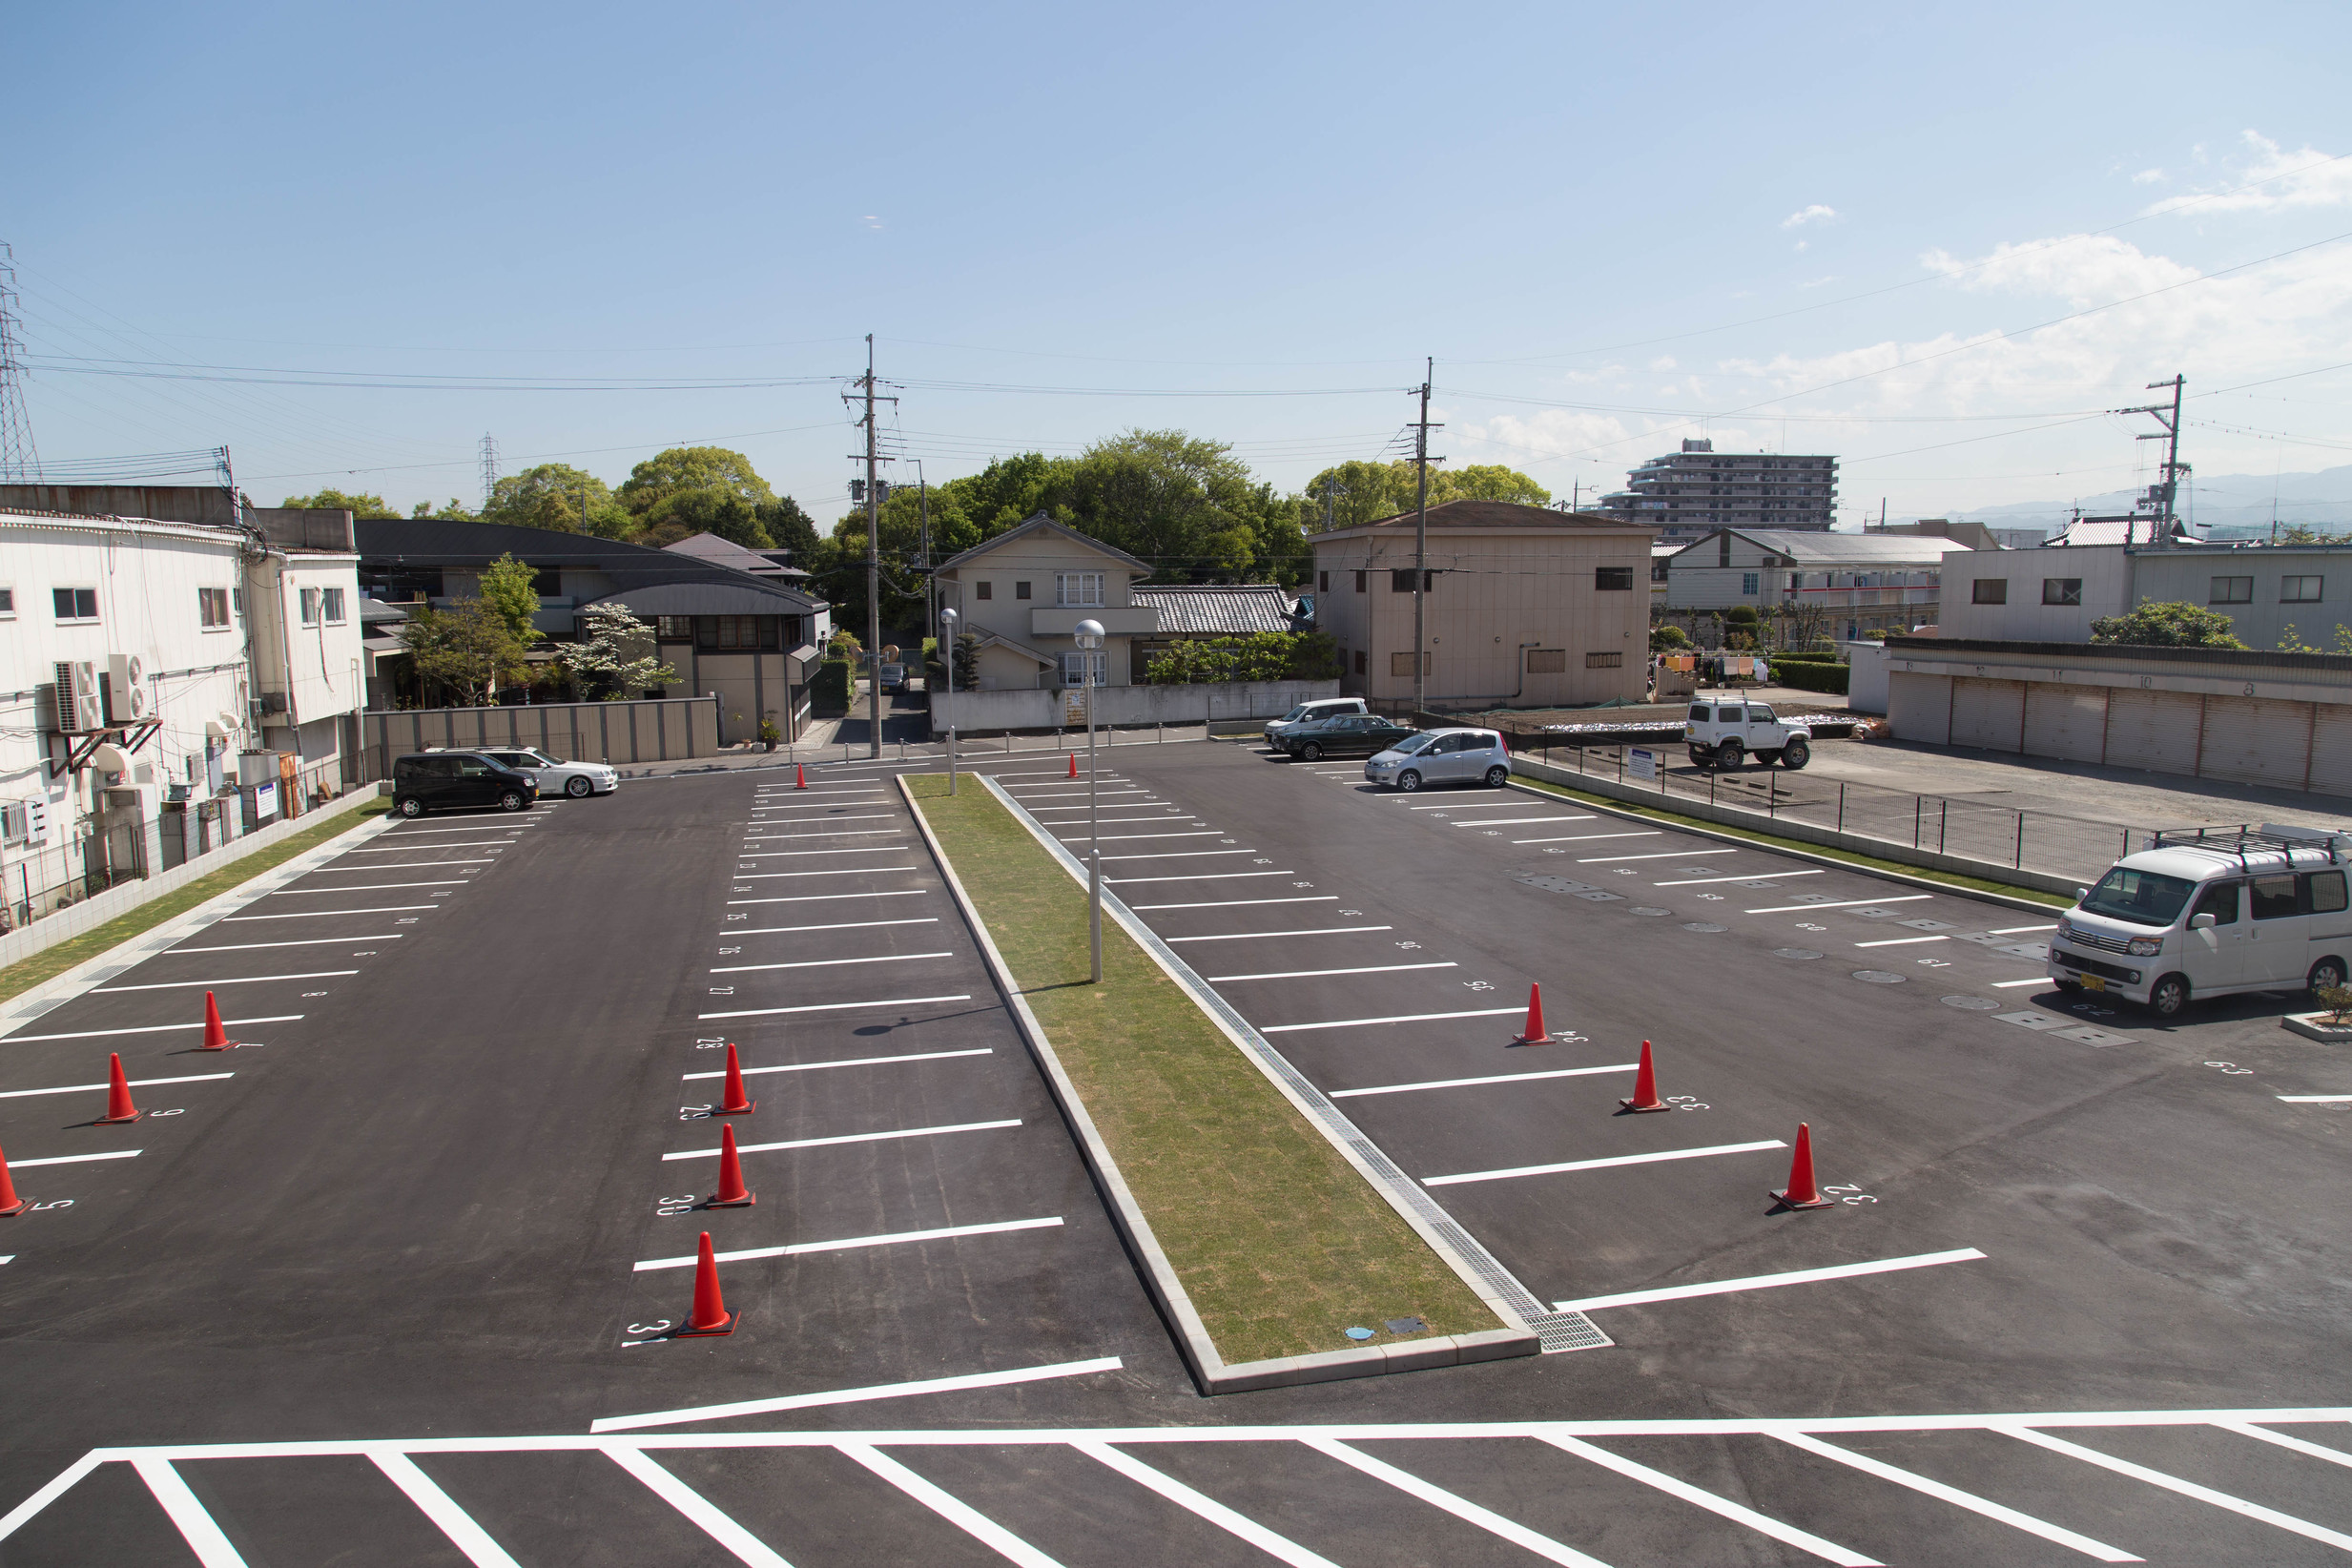 無料駐車場 - 平面駐車場67台完備普通車無料大型車駐車可能